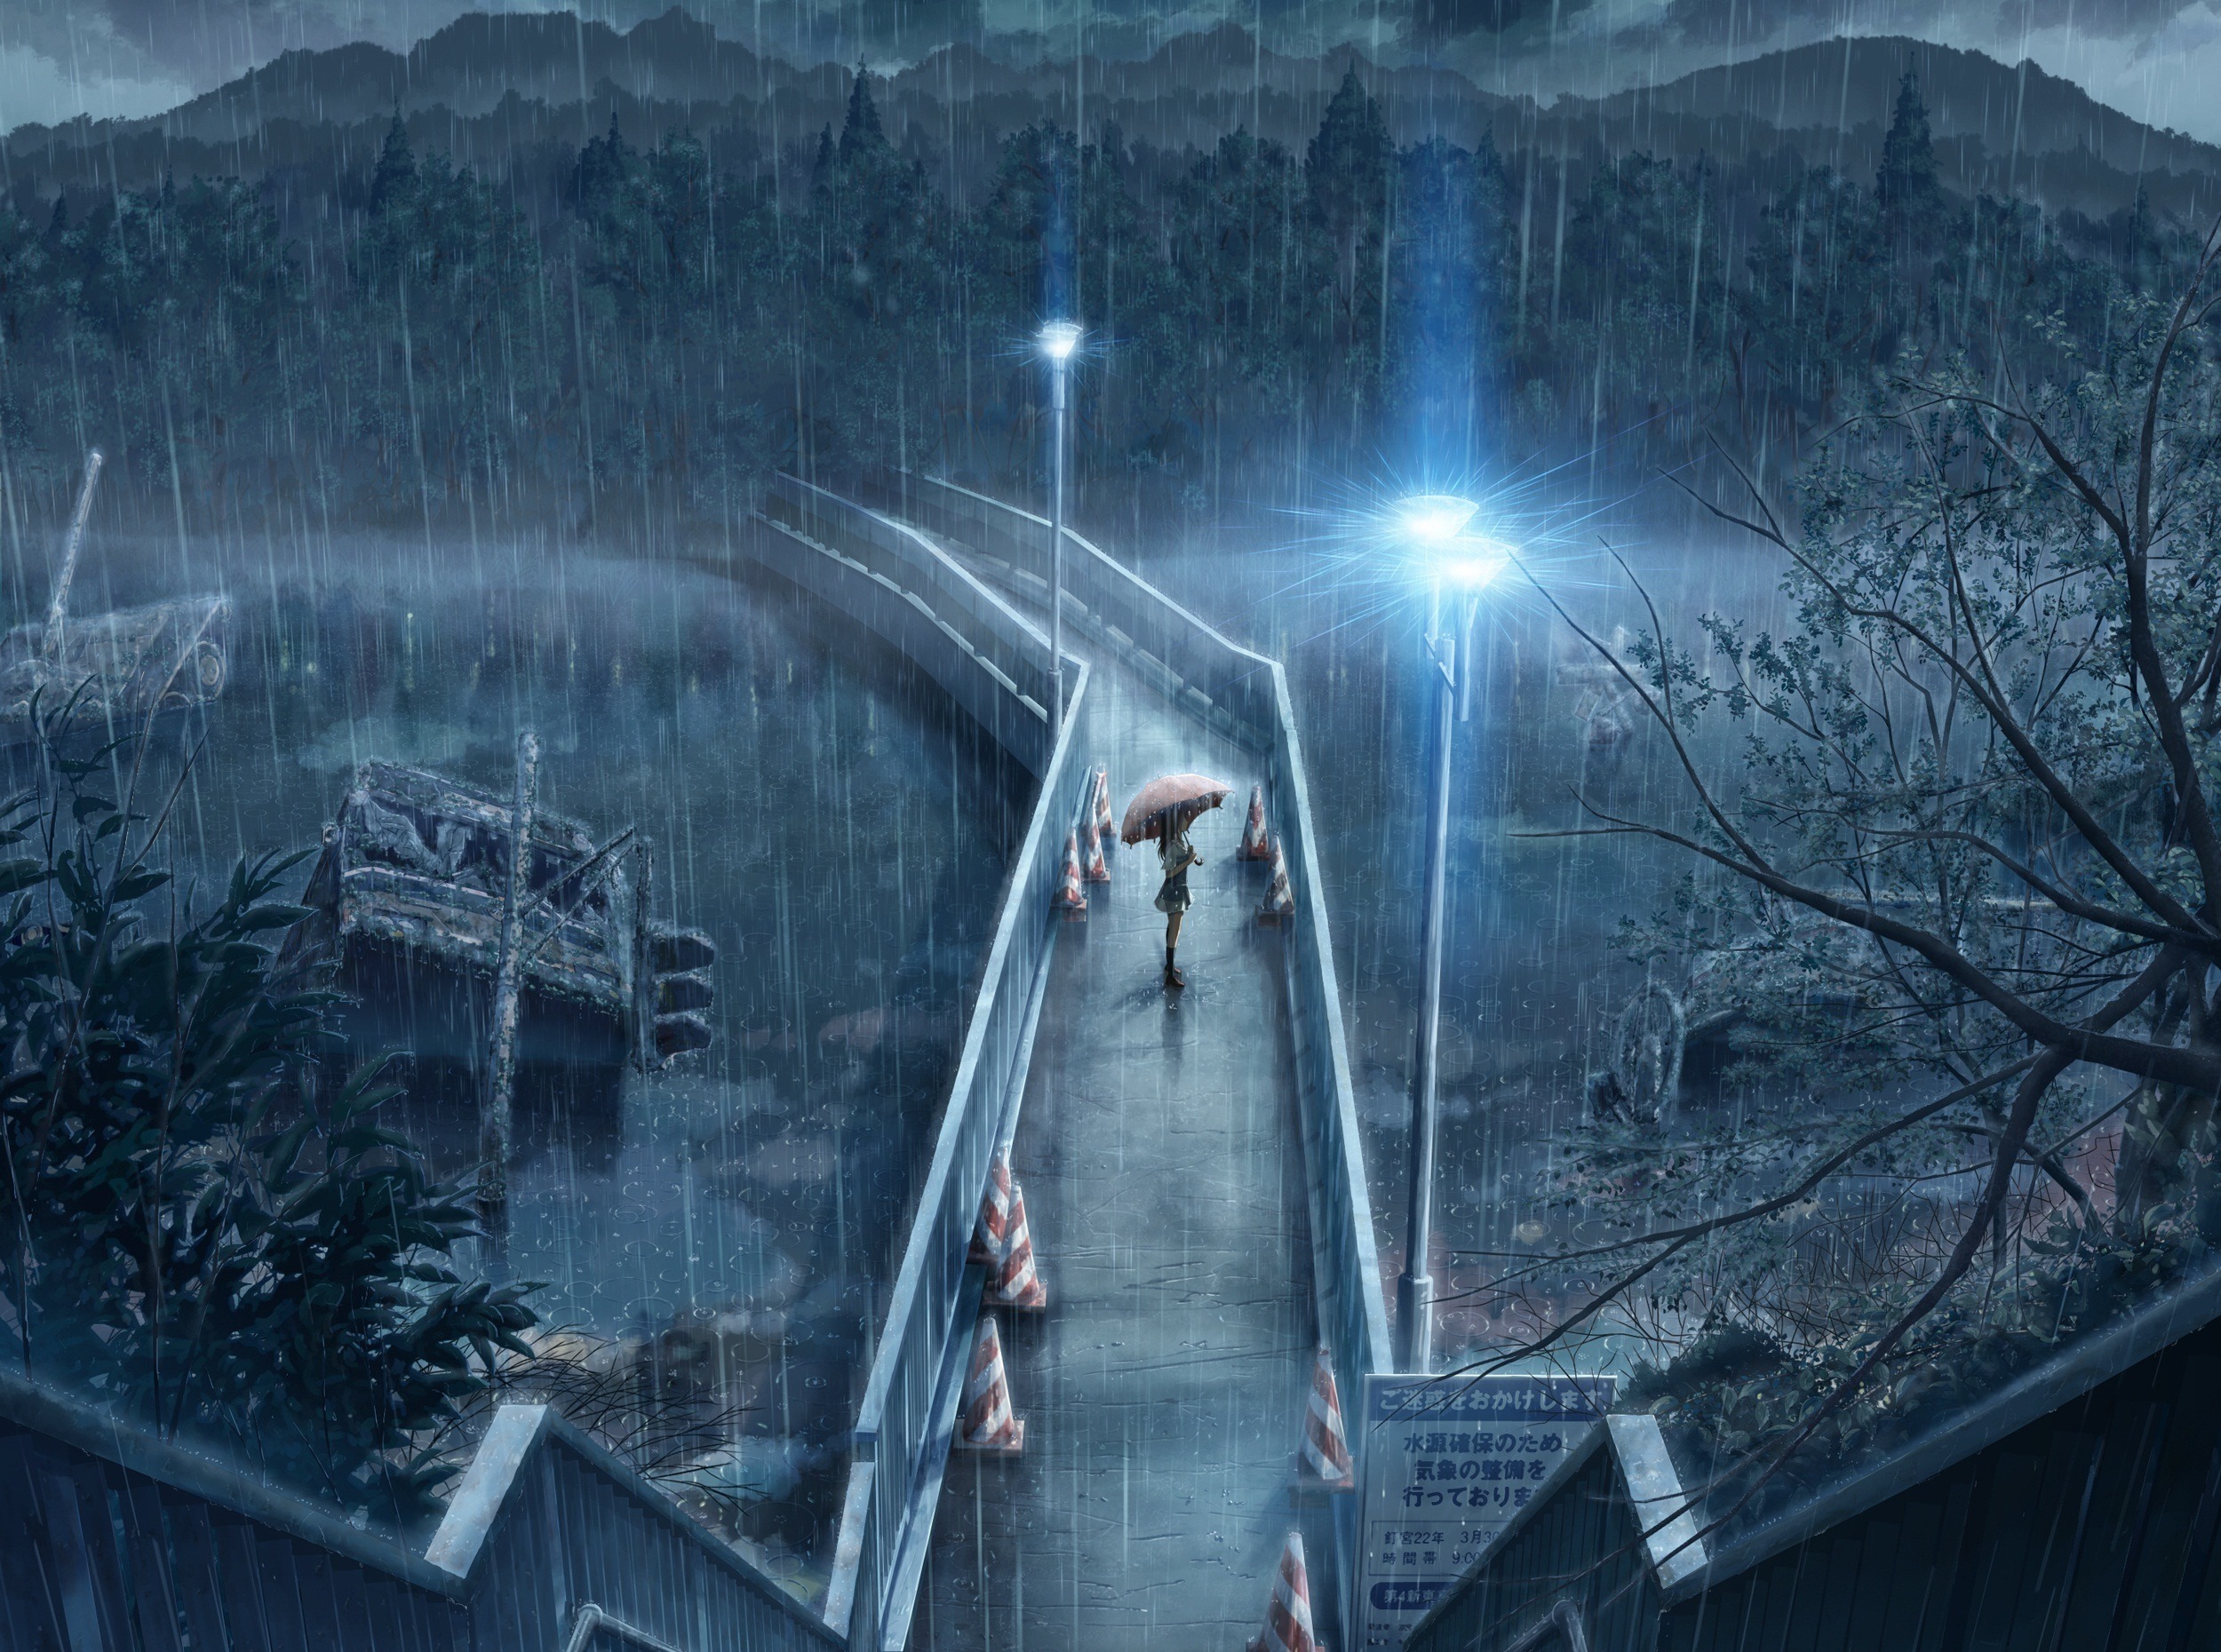 Rainy cityscape featuring an anime inspired artwork from Denpa teki na Kanojo.